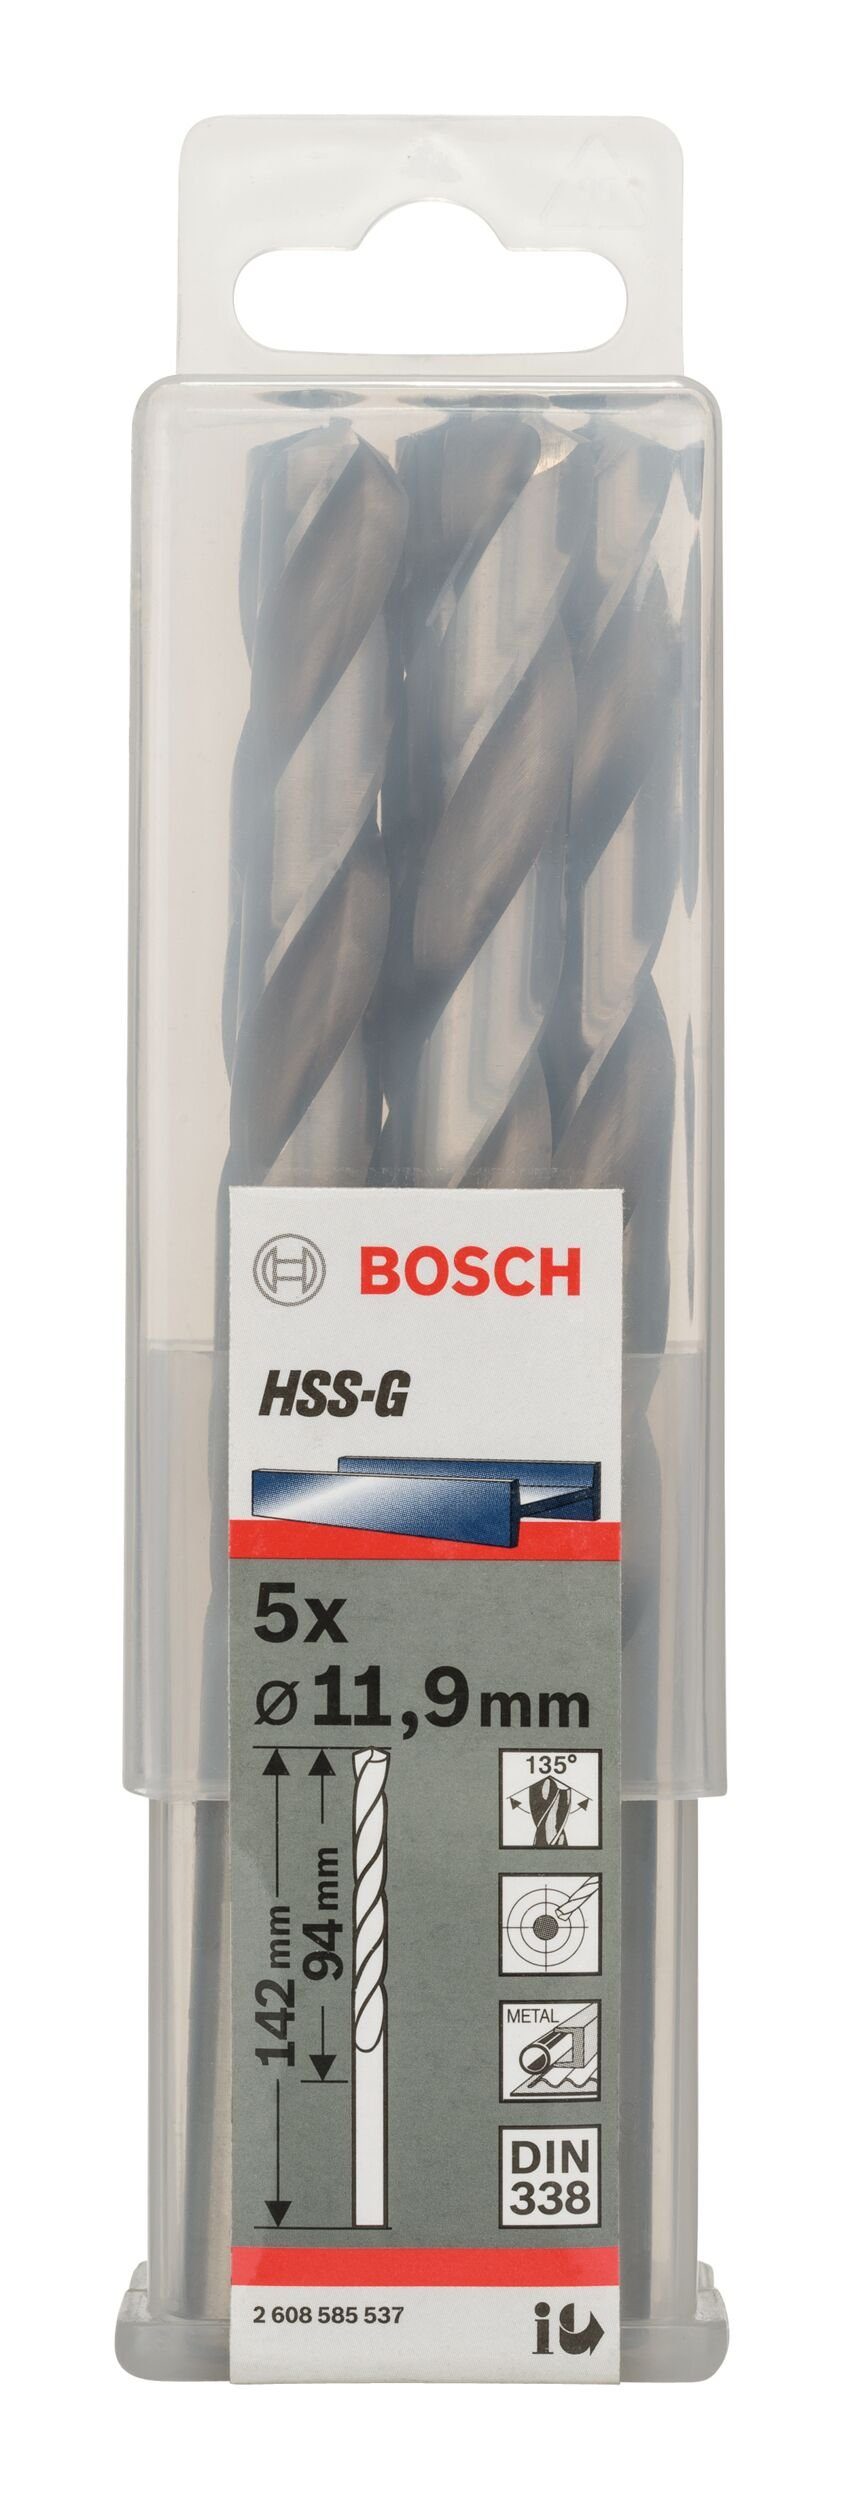 338) 151 - Metallbohrer, (5 mm 101 x - 11,9 (DIN BOSCH 5er-Pack x HSS-G Stück),